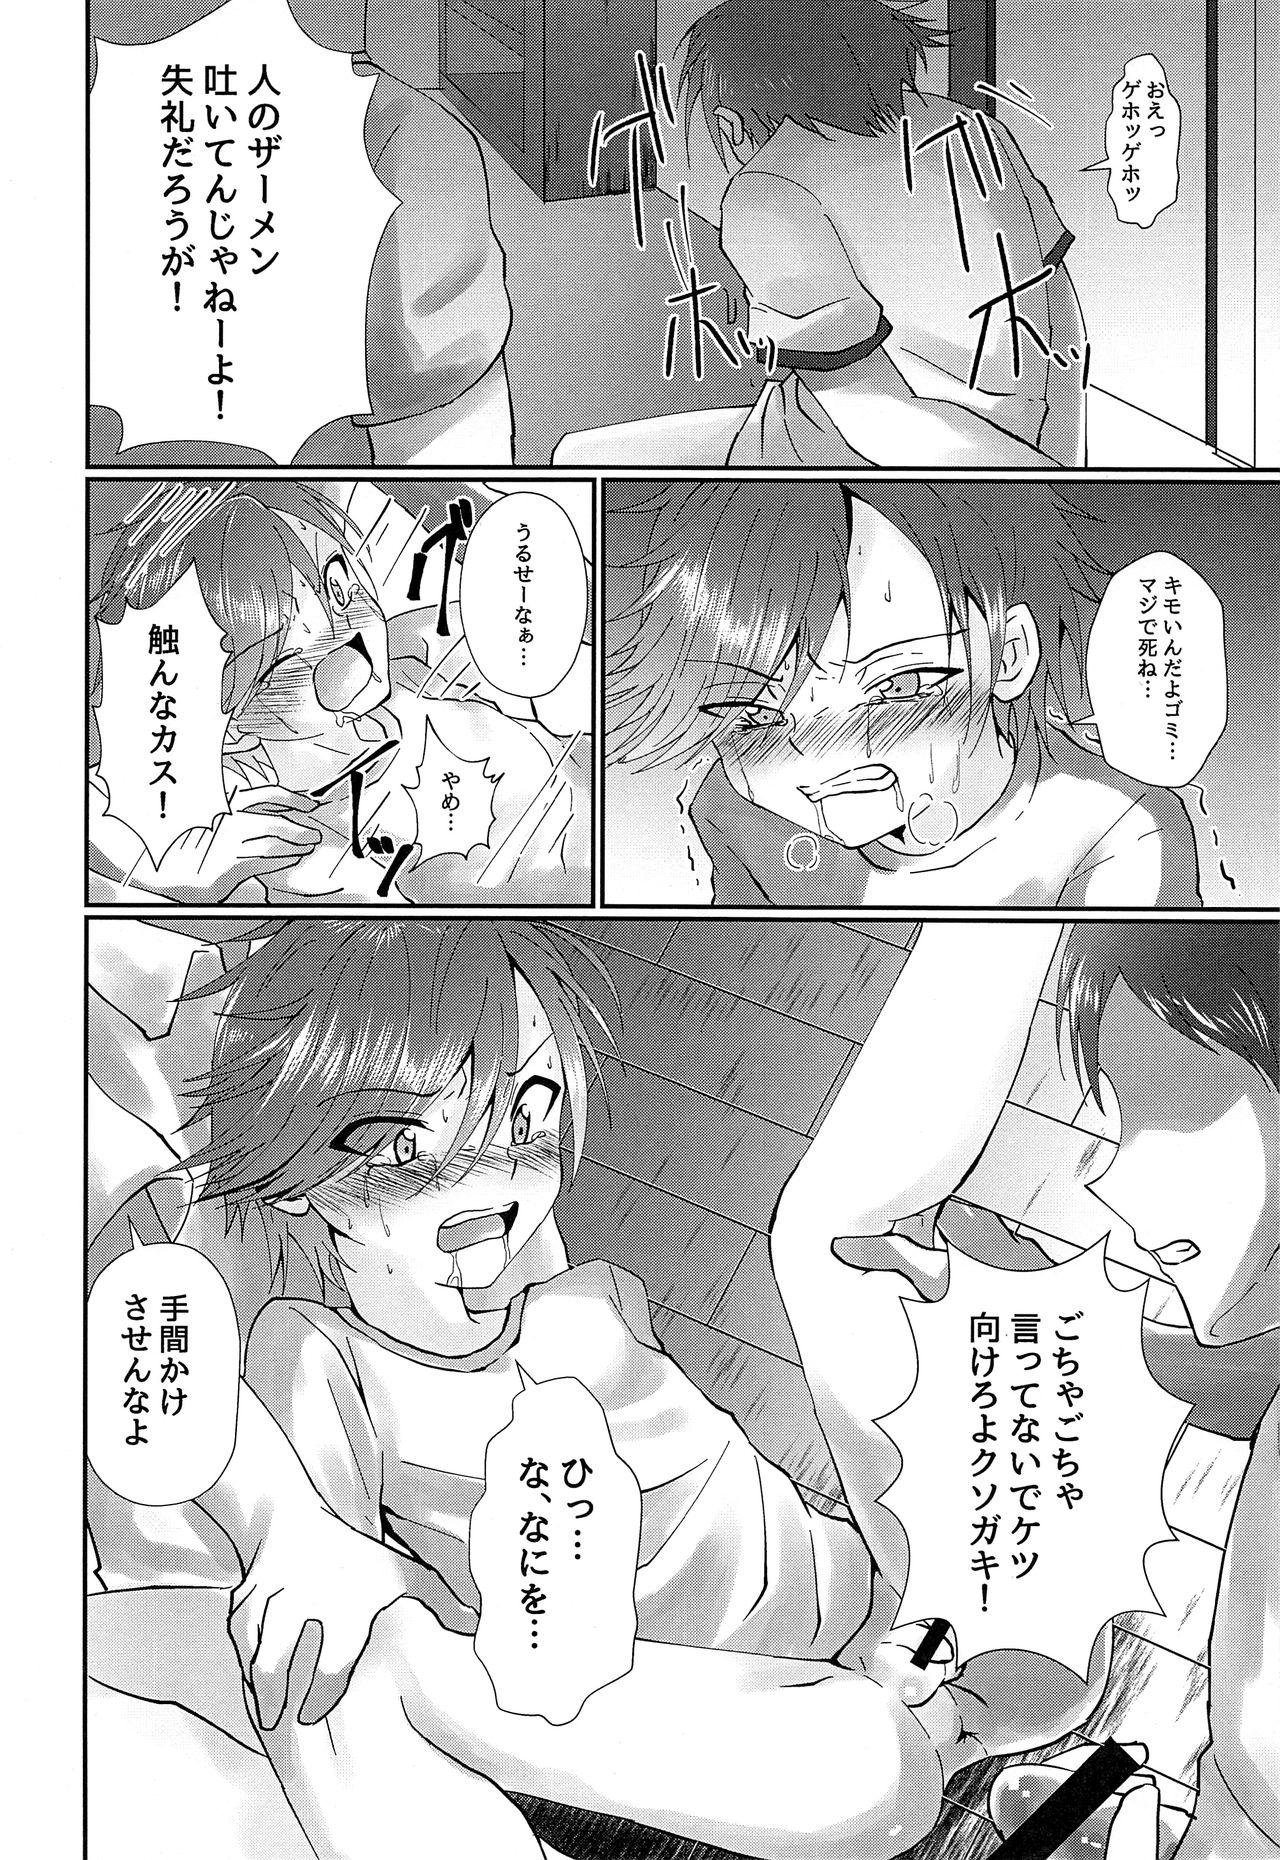 Cruising ki no tsuyoi shōnen o ri fujin ni re! vol.1 Cdmx - Page 11